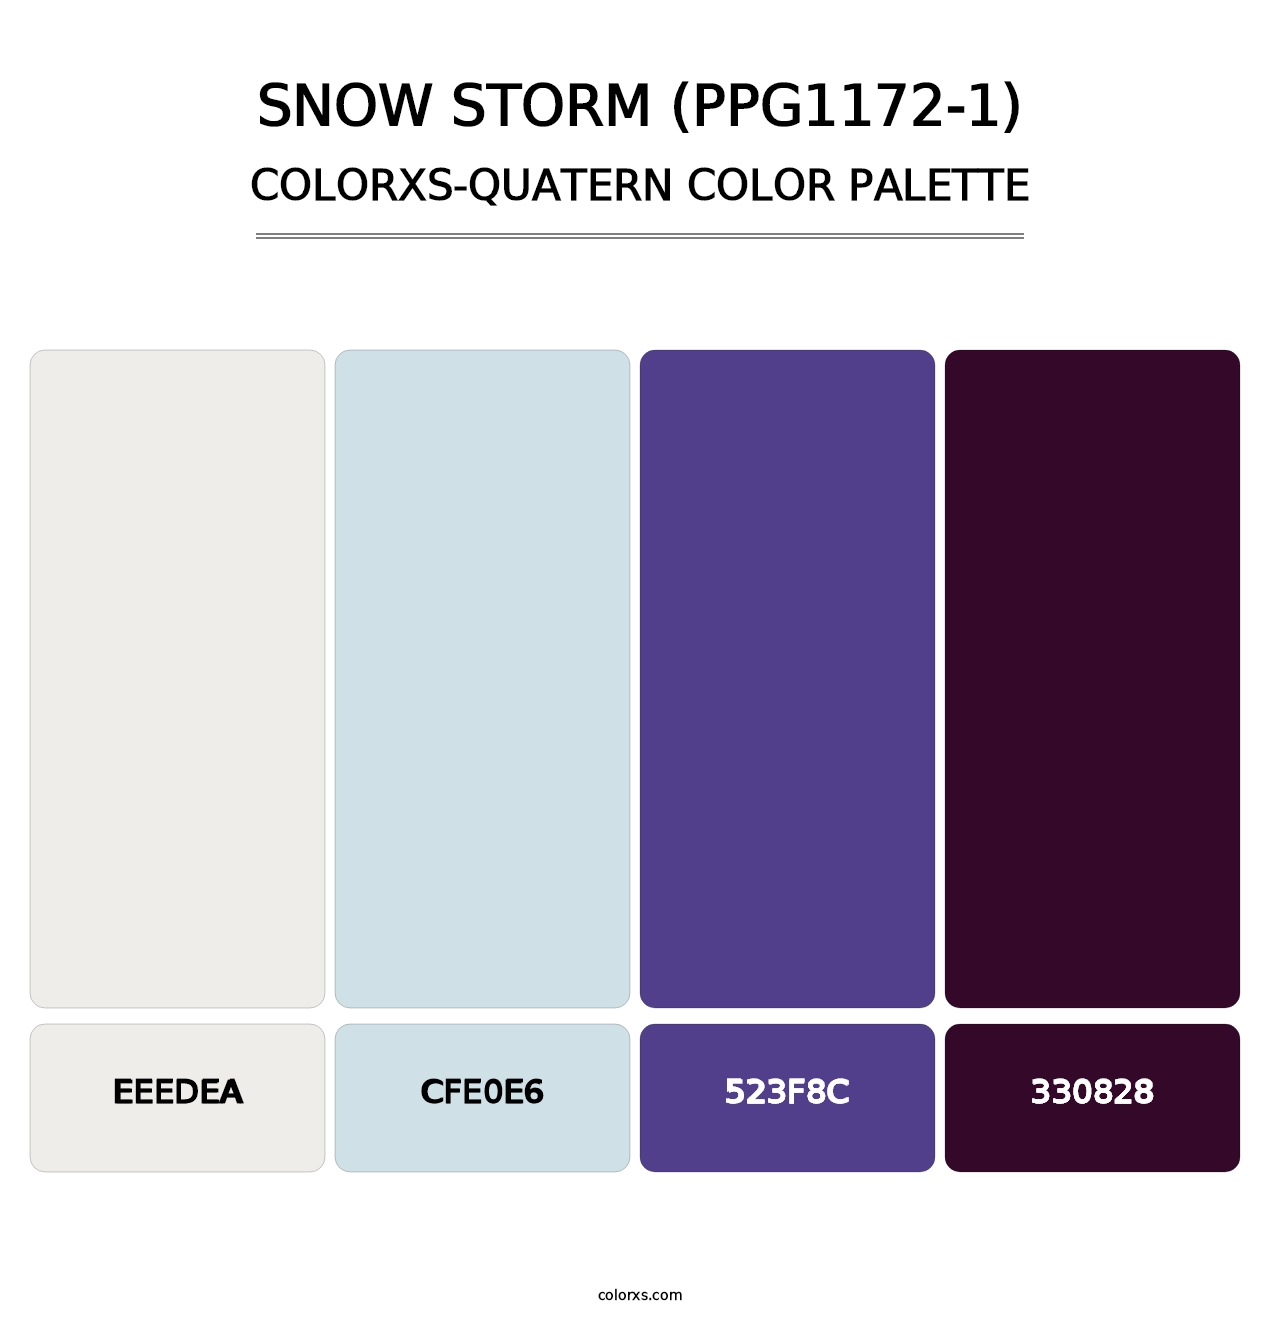 Snow Storm (PPG1172-1) - Colorxs Quatern Palette